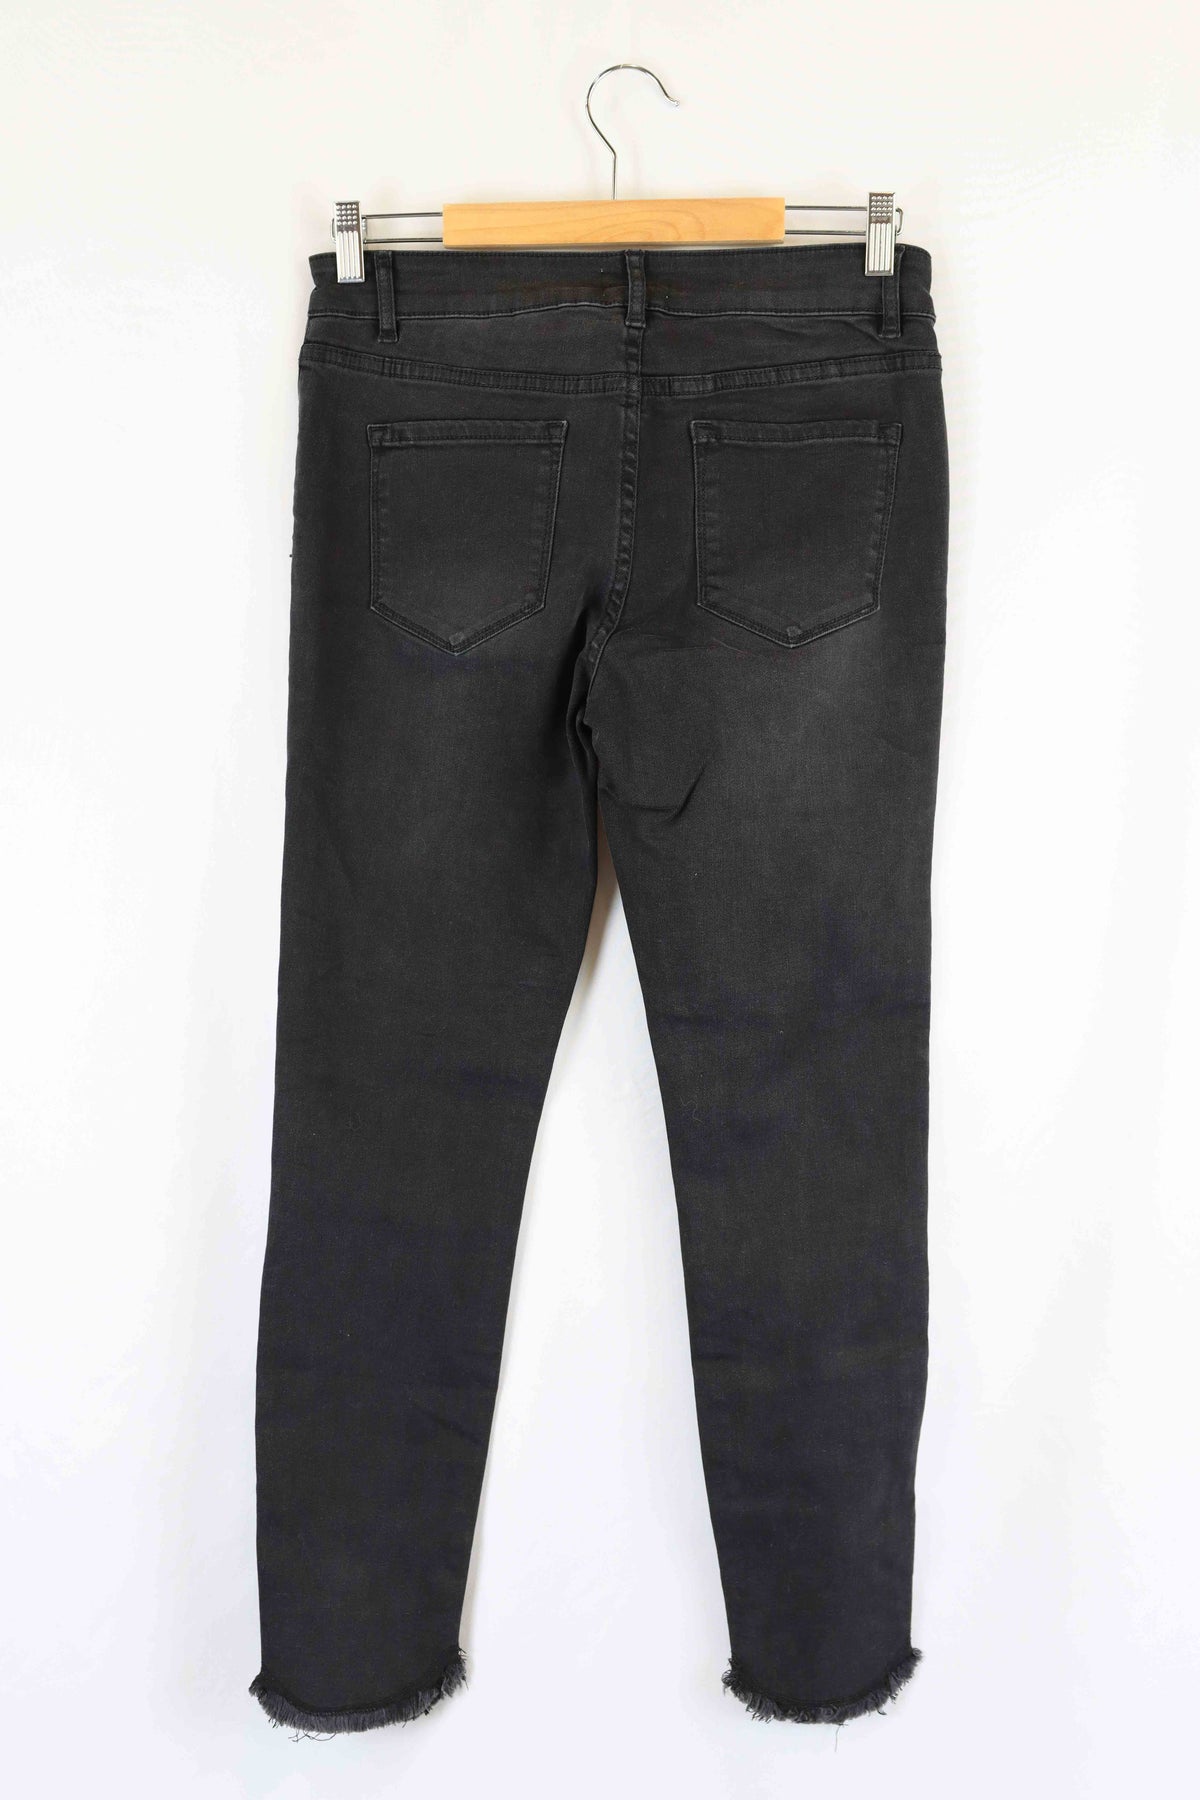 Seed Black Skinny Jeans 12